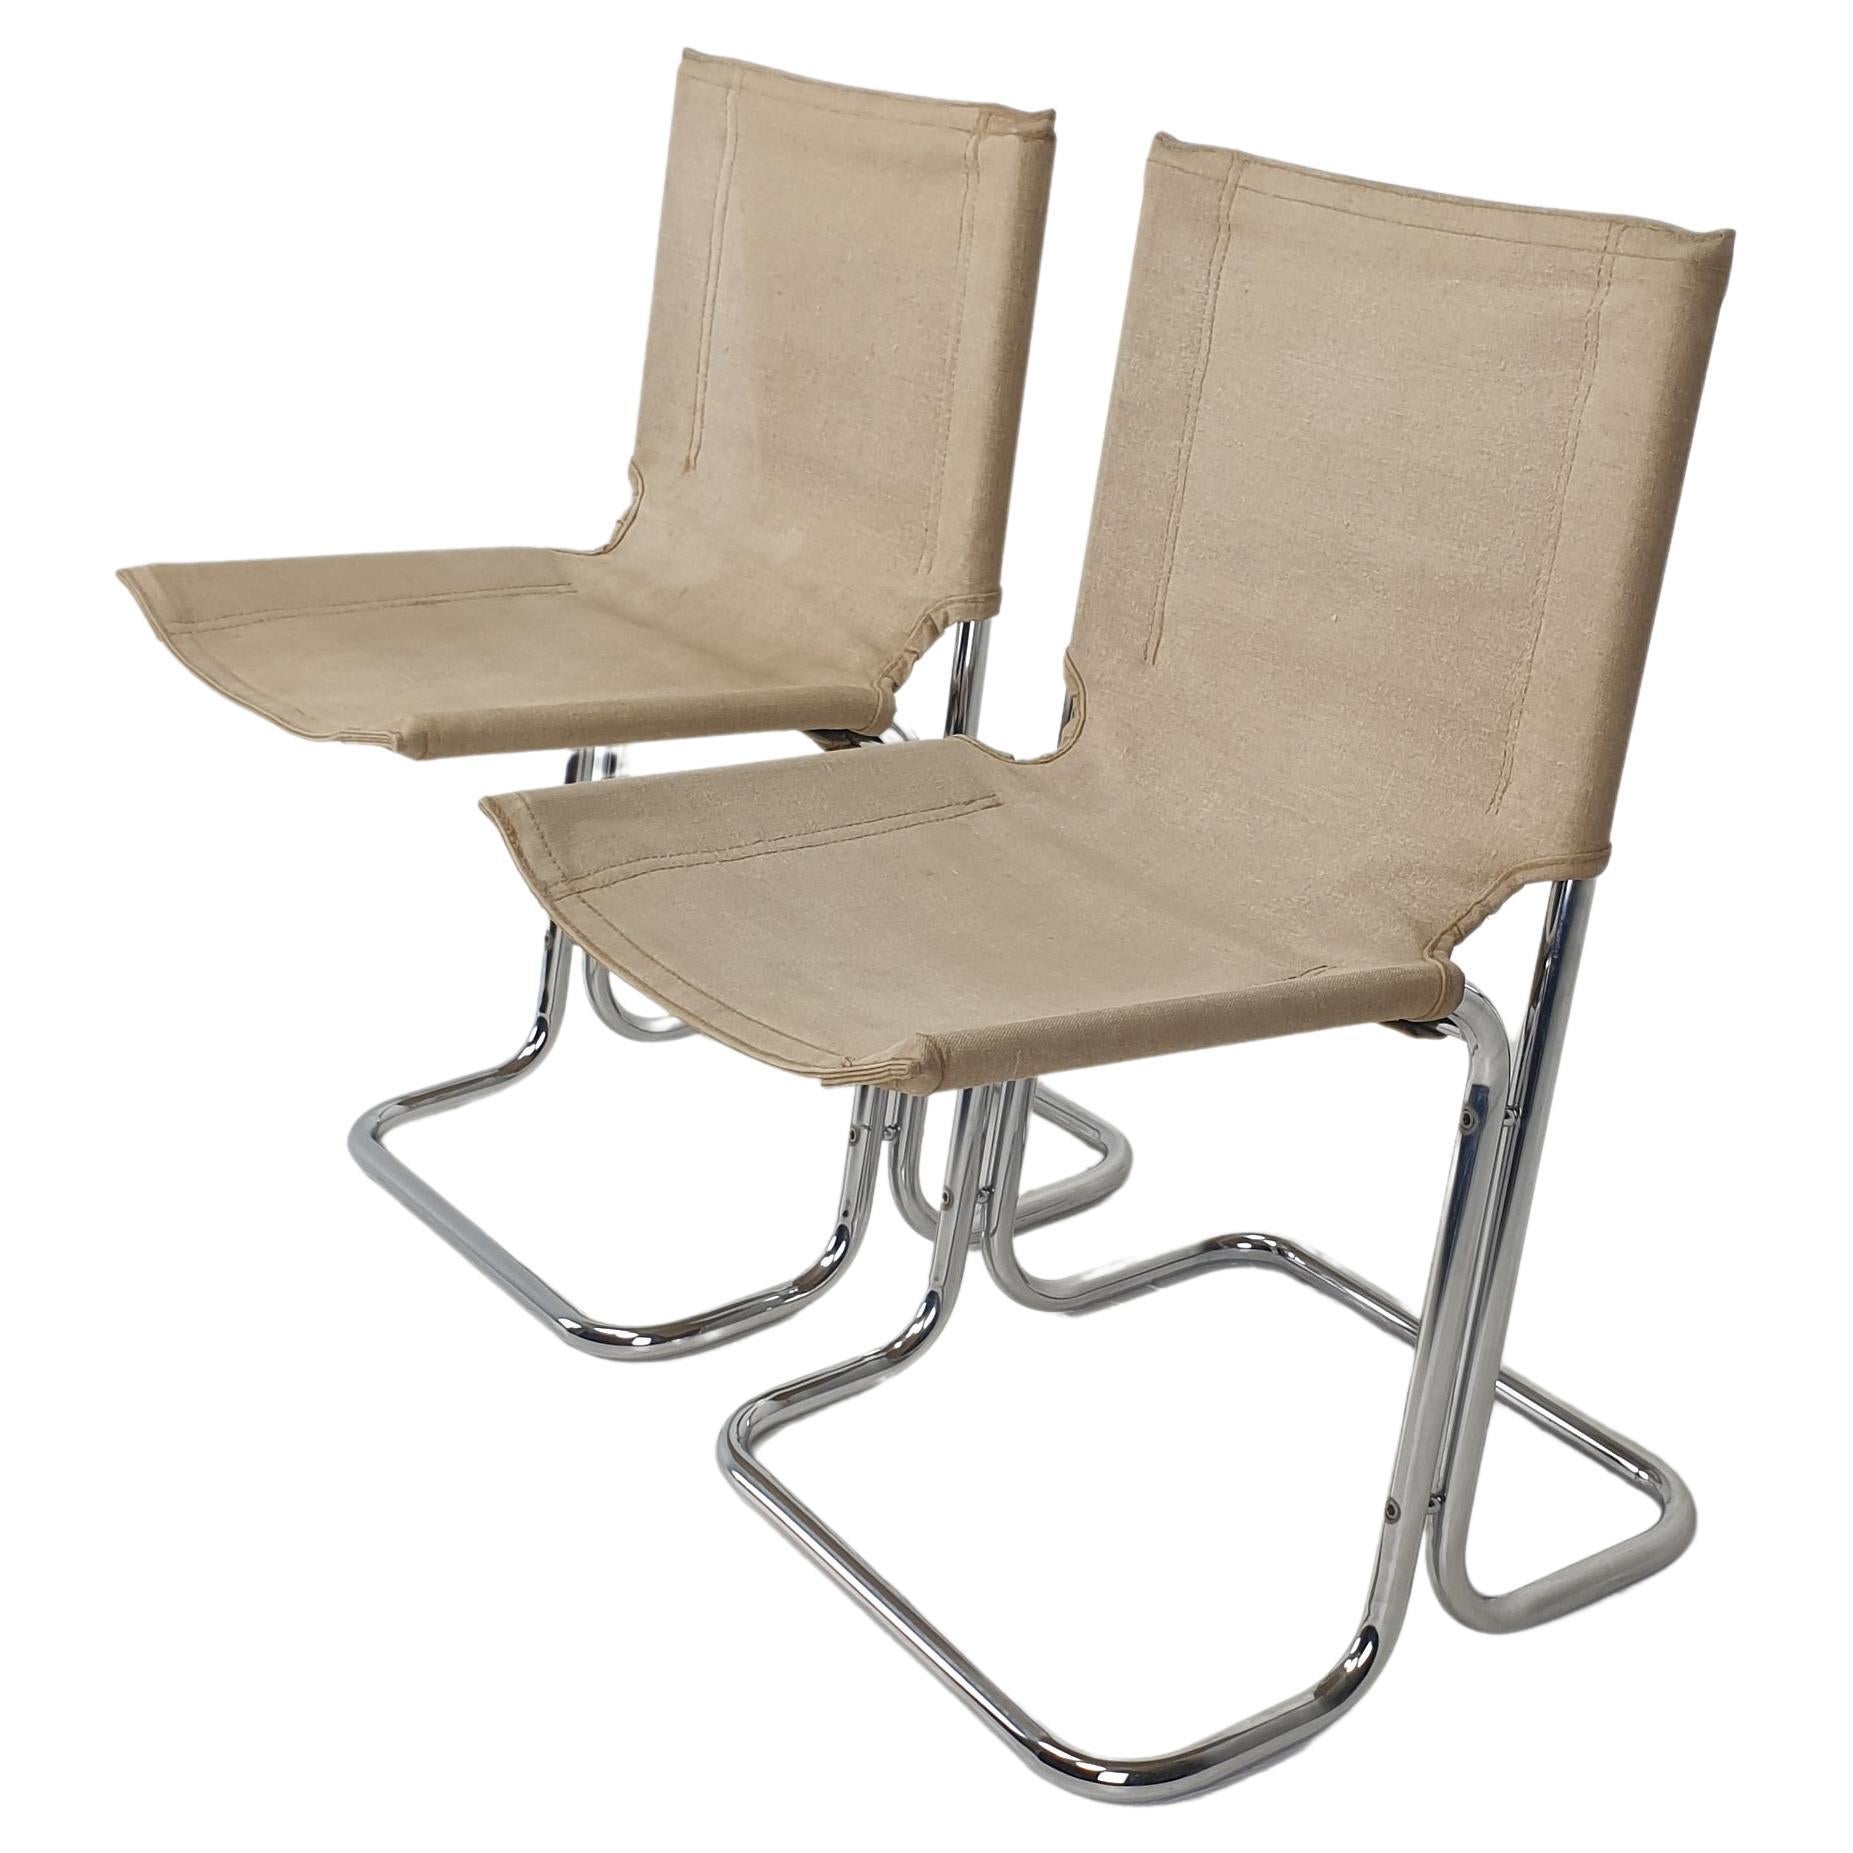 Set aus 2 italienischen Stühlen aus Segeltuch und verchromtem Metall, 1970er Jahre